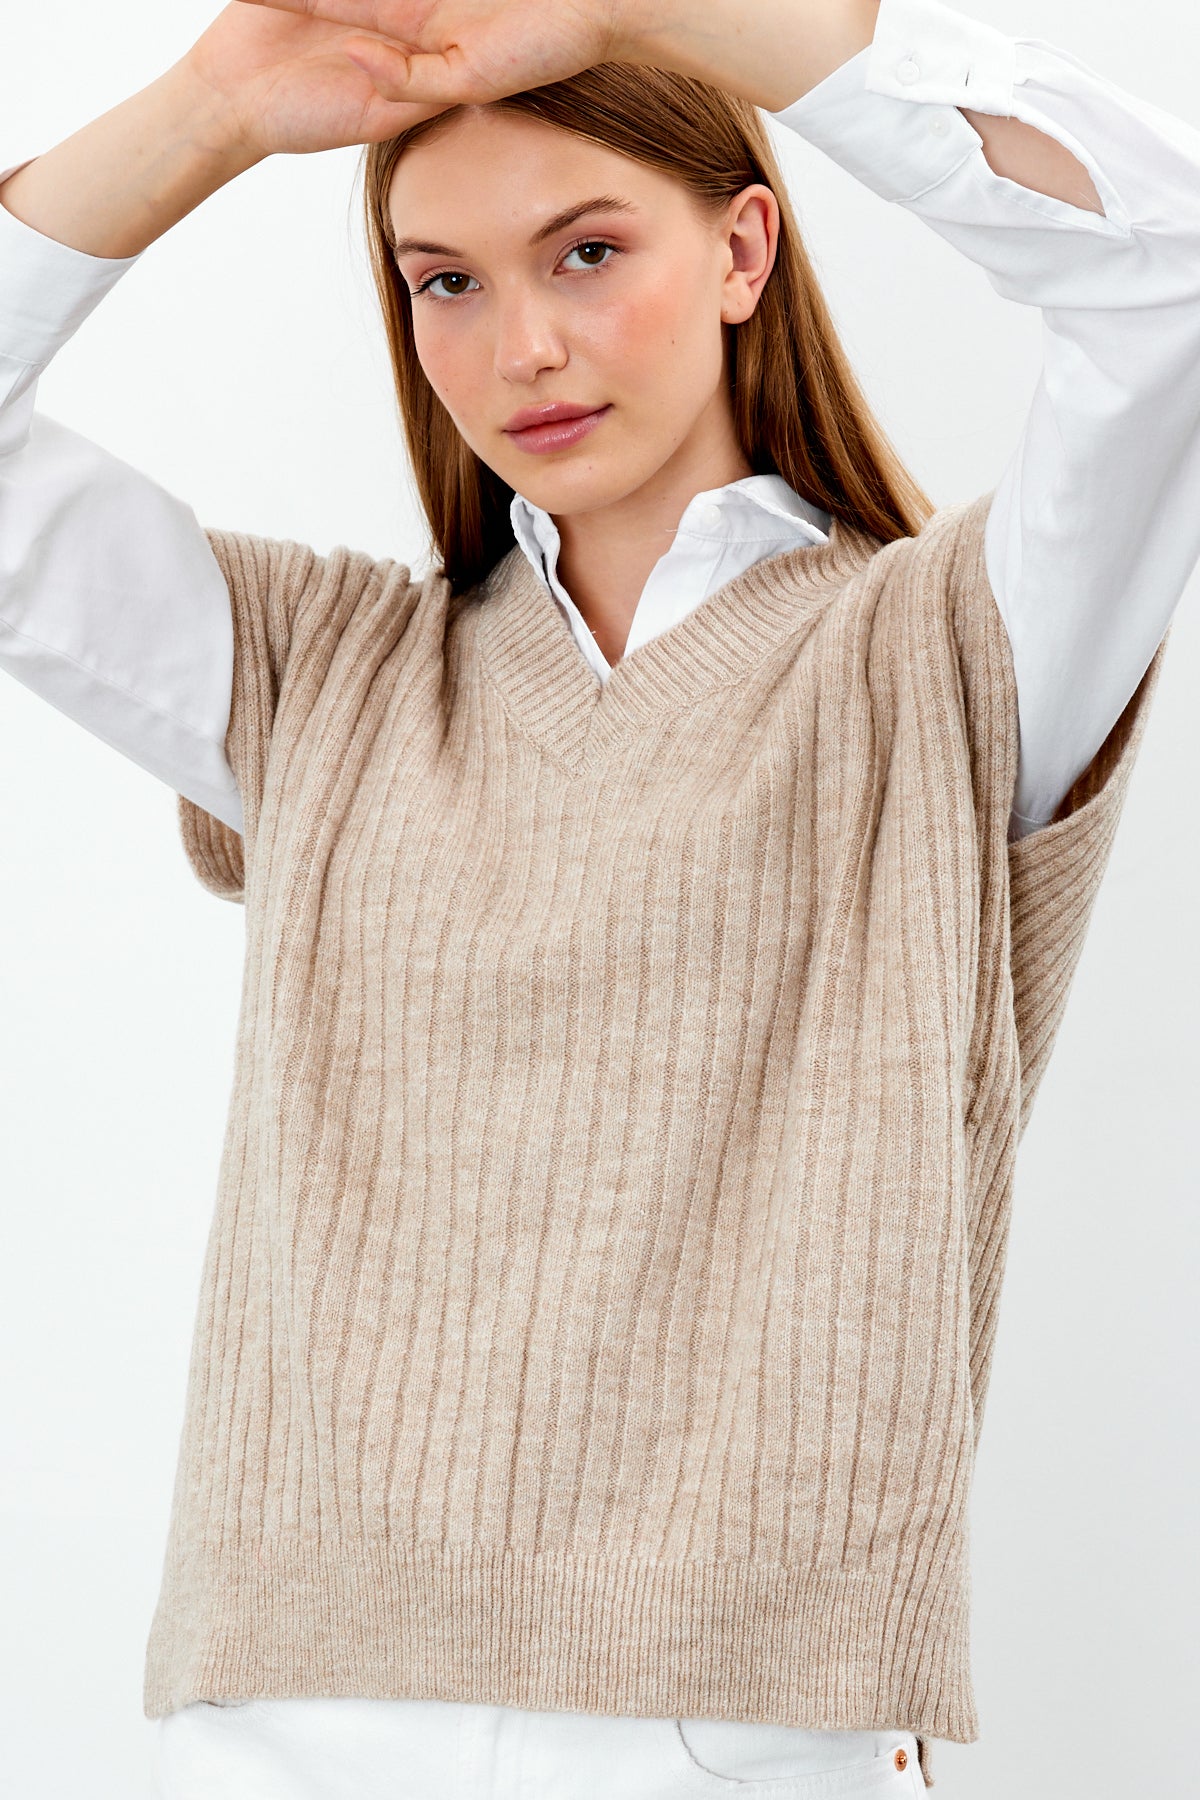 Knit Sweater Vest Ribbed Solid Color V Neck - SKU: 1201